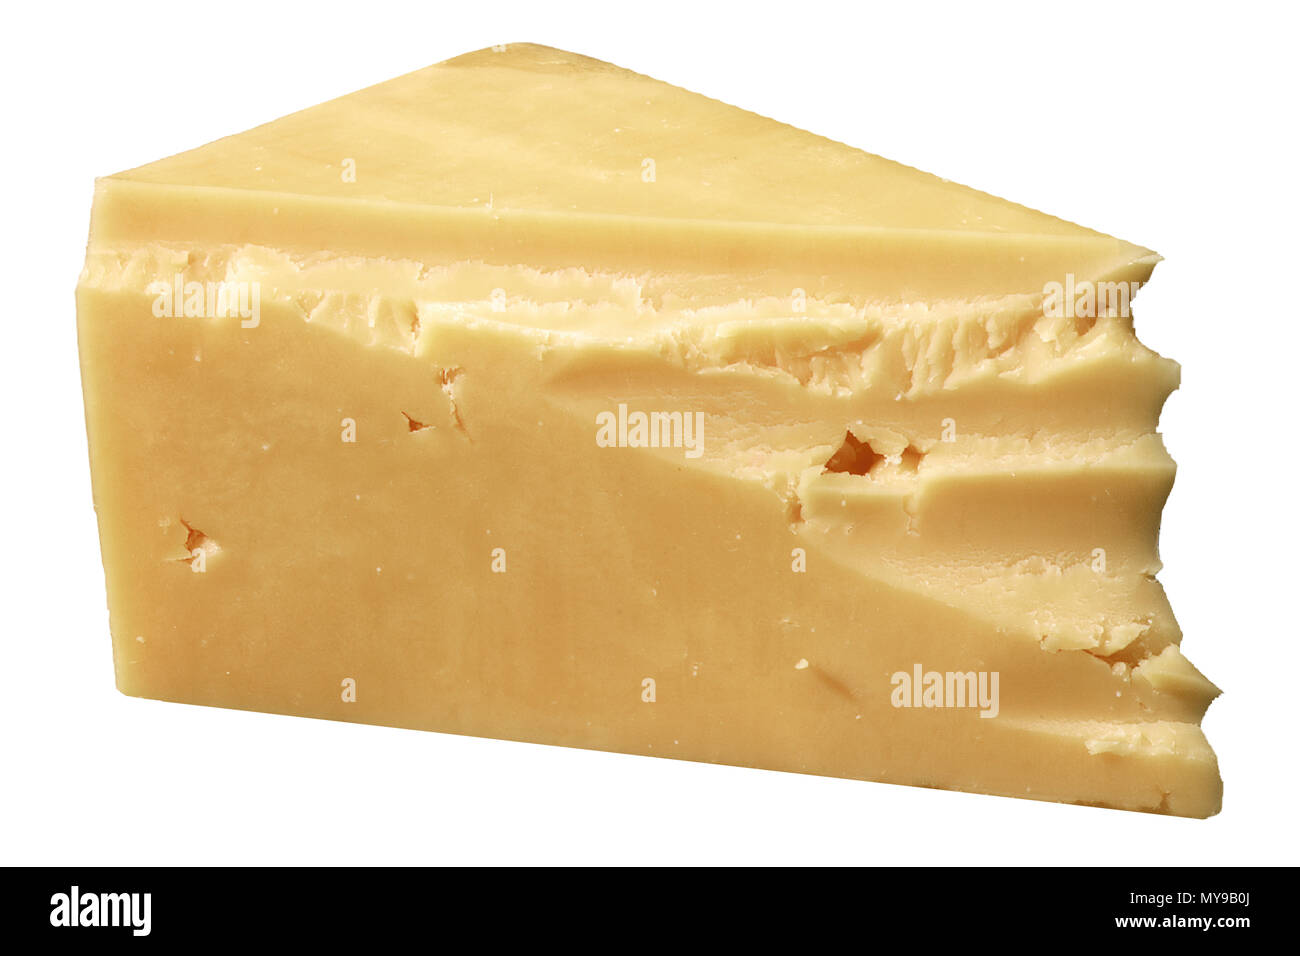 Cale de fromage jaune Banque D'Images